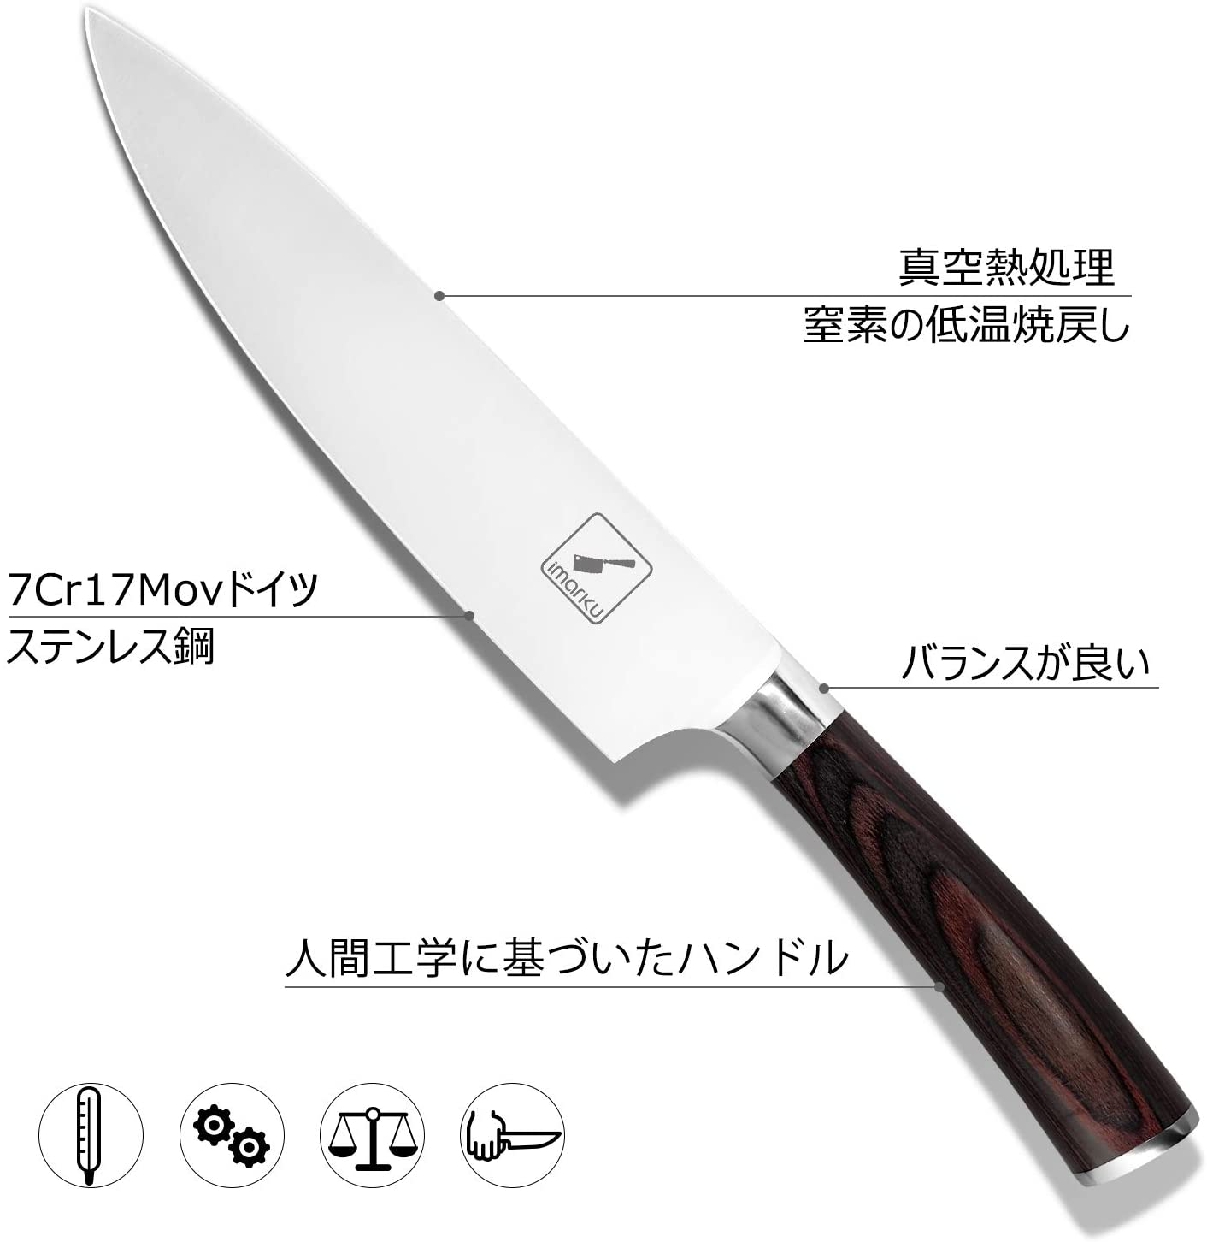 imarku(イマルク) シェフナイフの商品画像2 